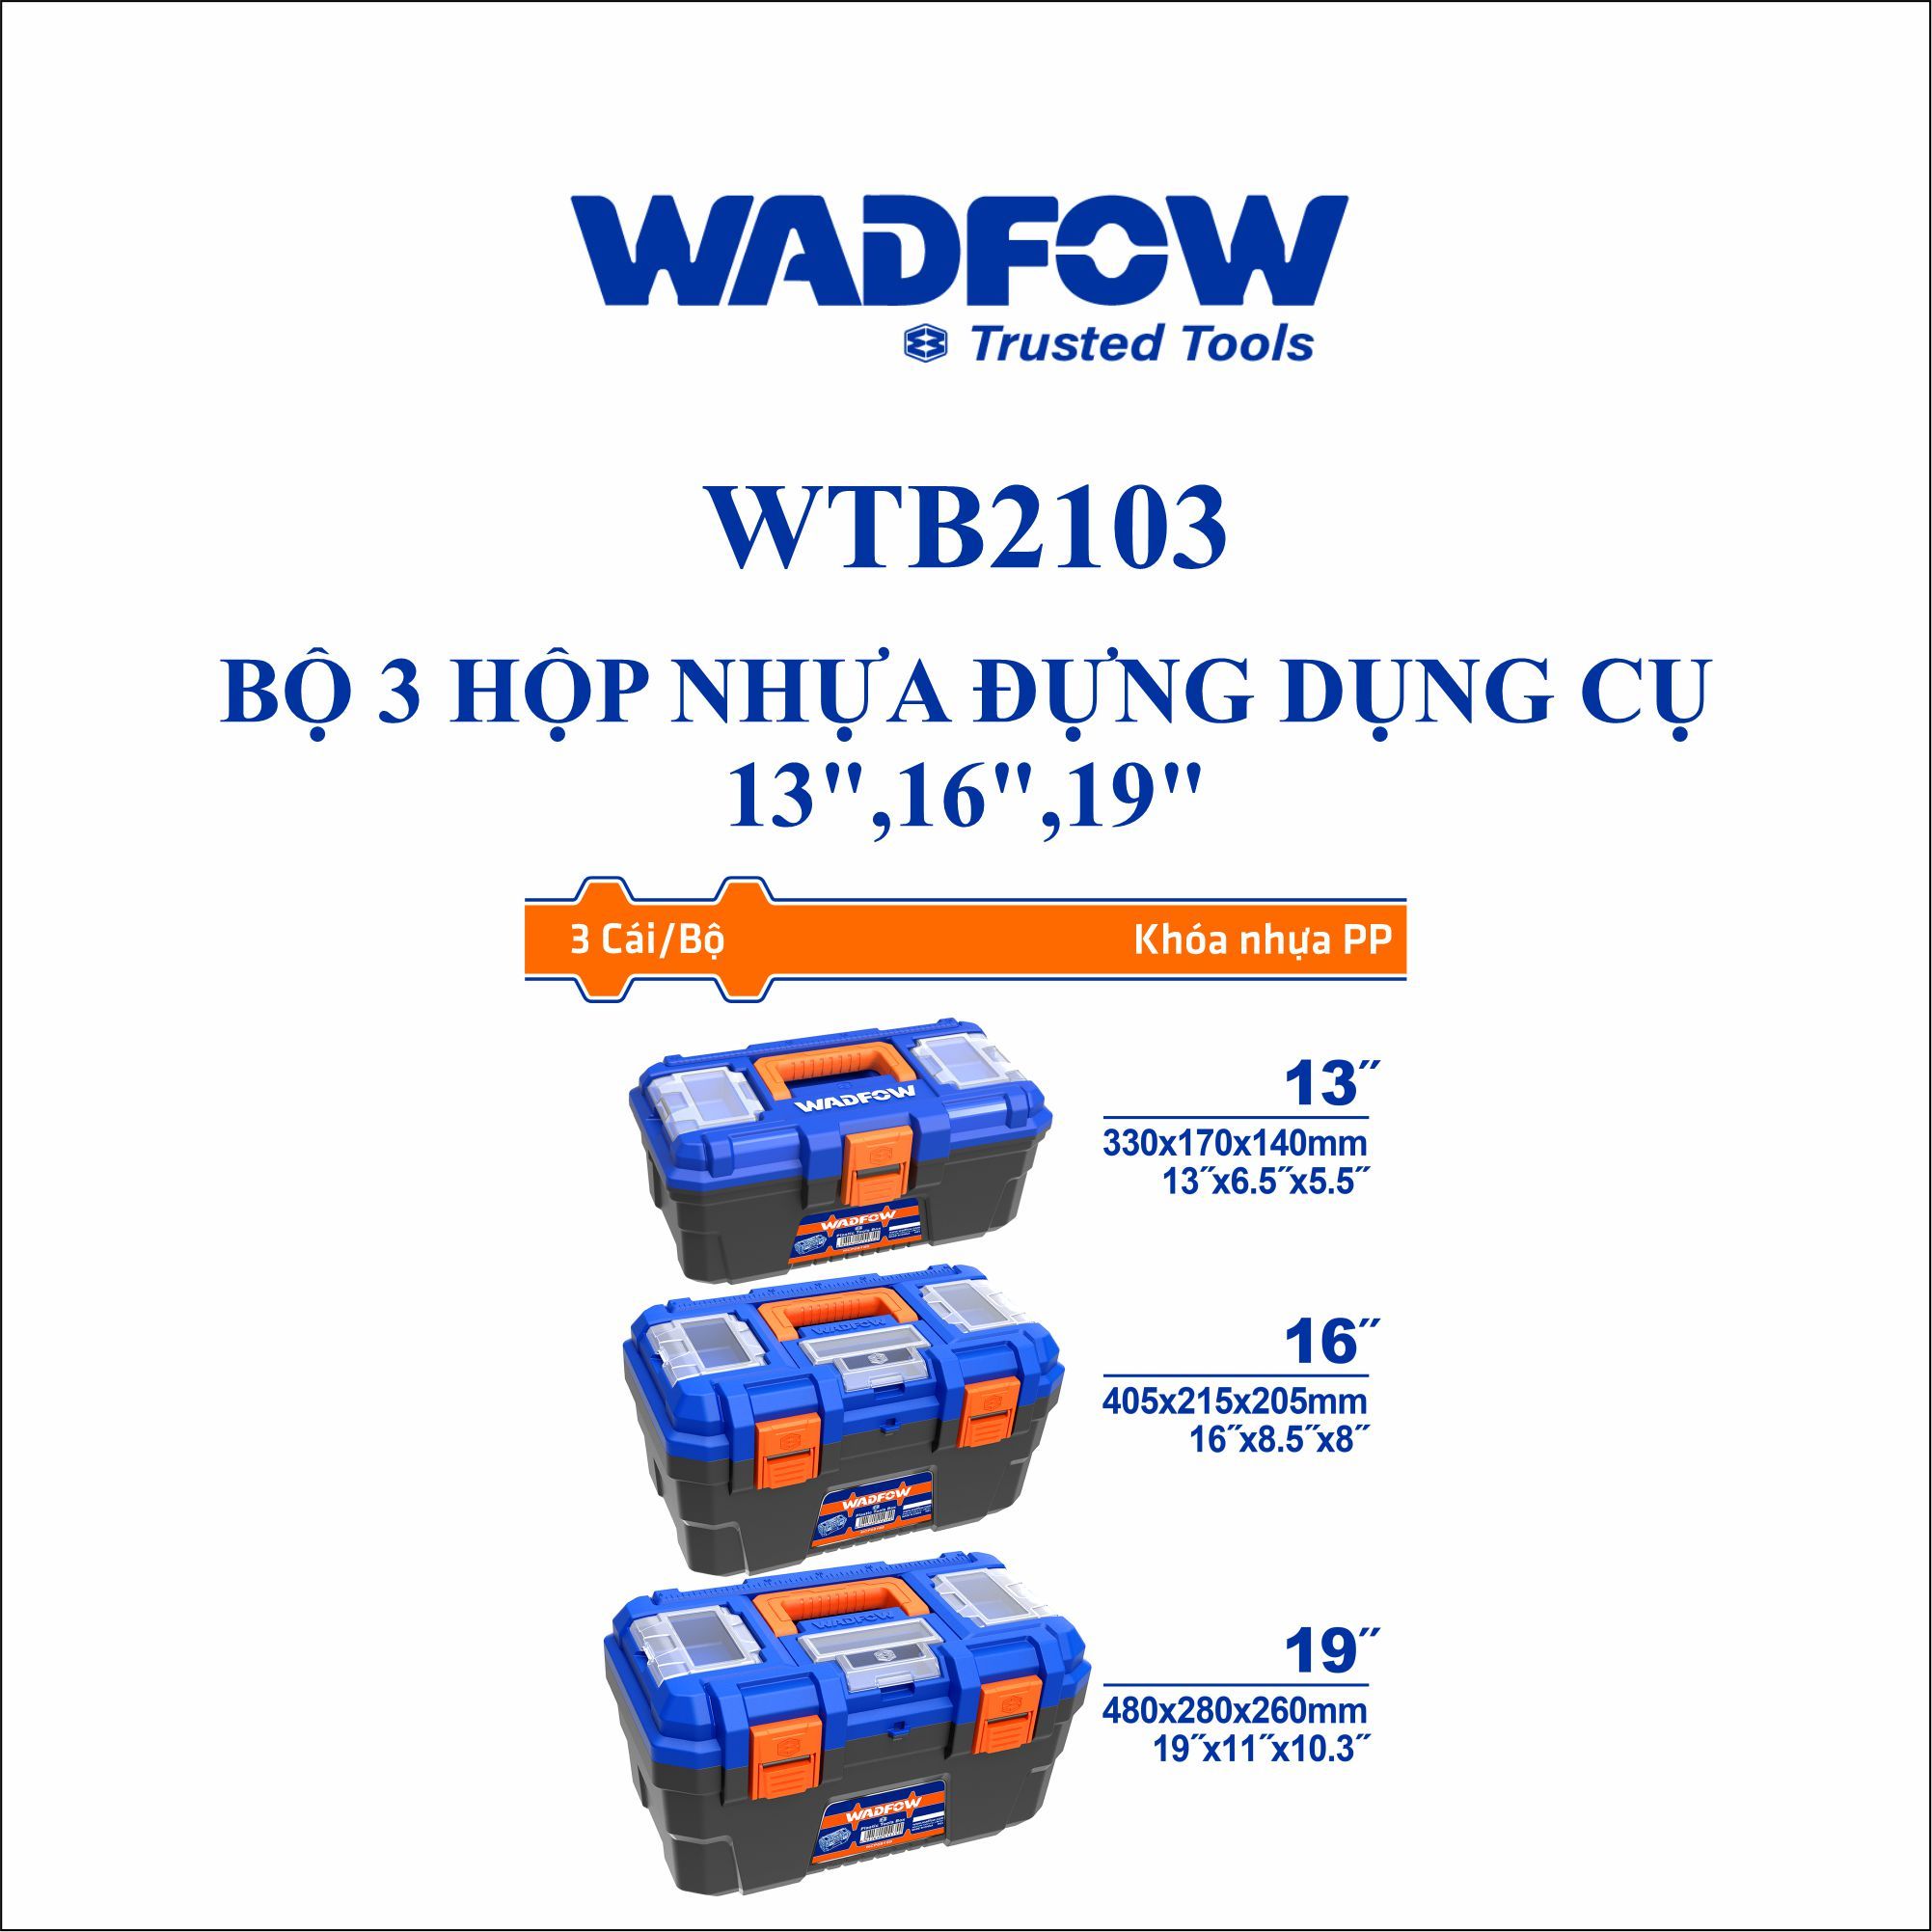  Bộ 3 hộp nhựa đựng dụng cụ WADFOW WTB2103 